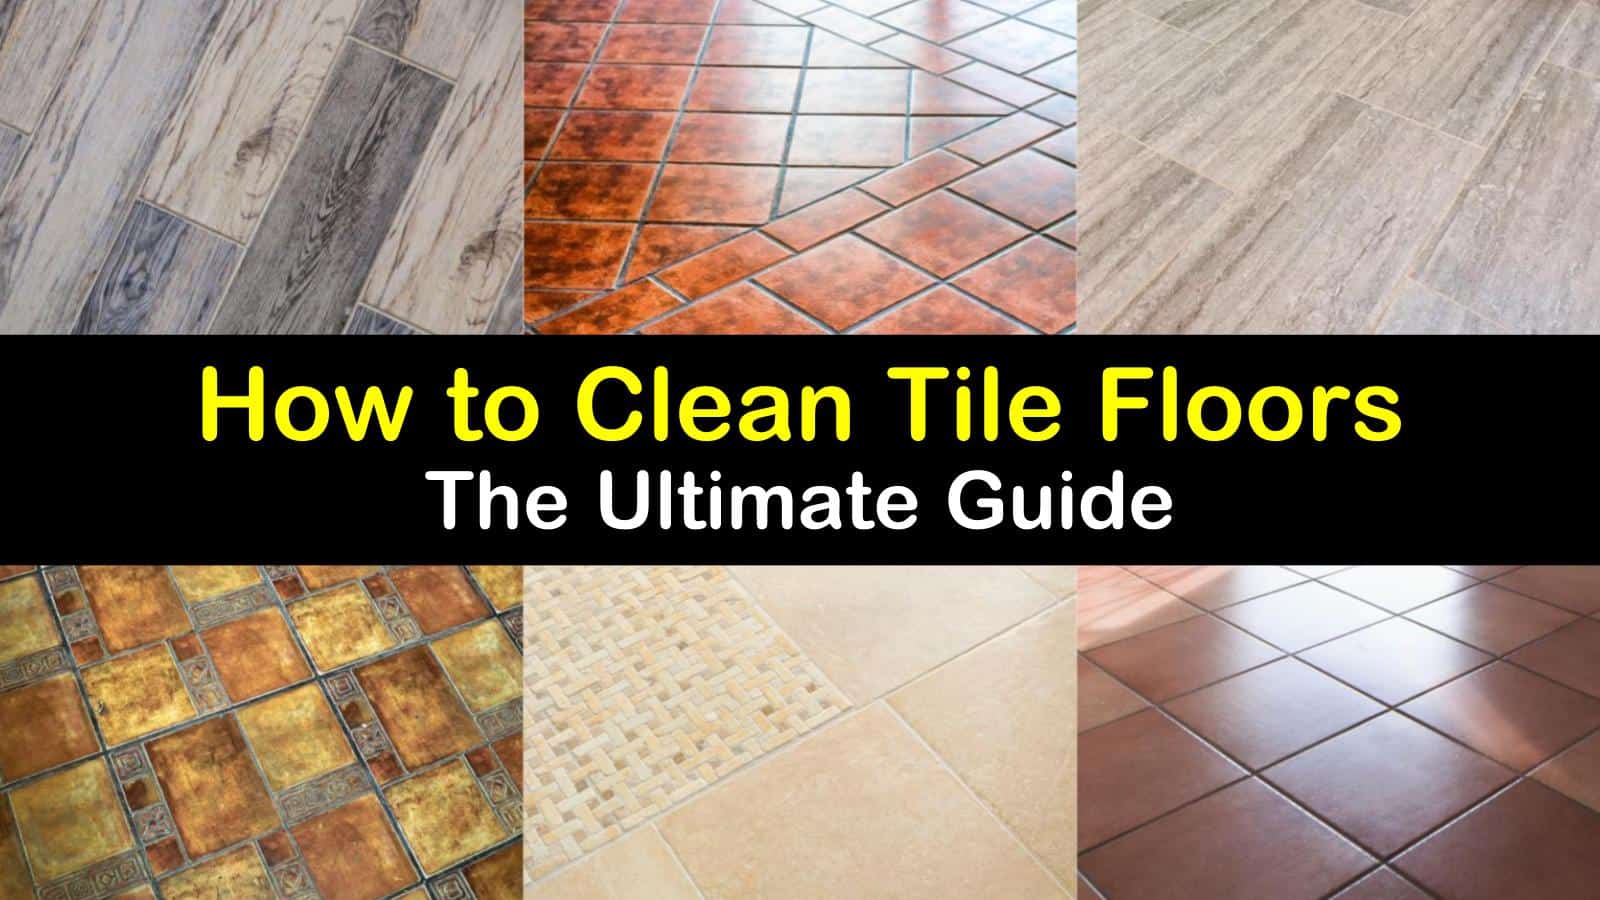 https://www.tipsbulletin.com/wp-content/uploads/2019/10/how-to-clean-tile-floors-t1.jpg